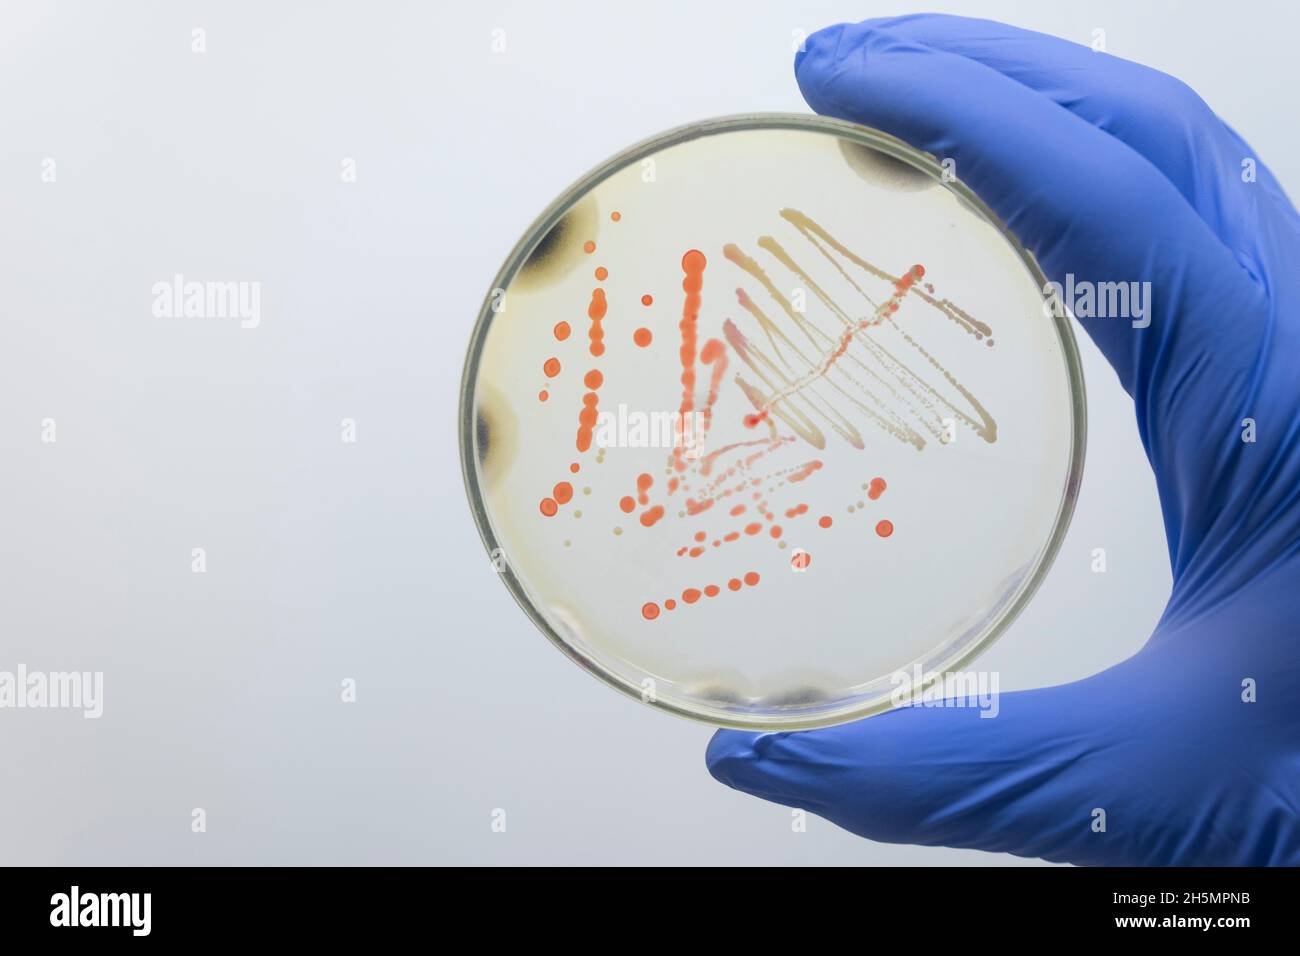 Der Wissenschaftler hält eine Petrischale mit pathogenen Kolonien von orangen und gelben Bakterien mit seiner Handschuhen in der Hand. Isolierung von Bakterien vom Menschen. Stockfoto